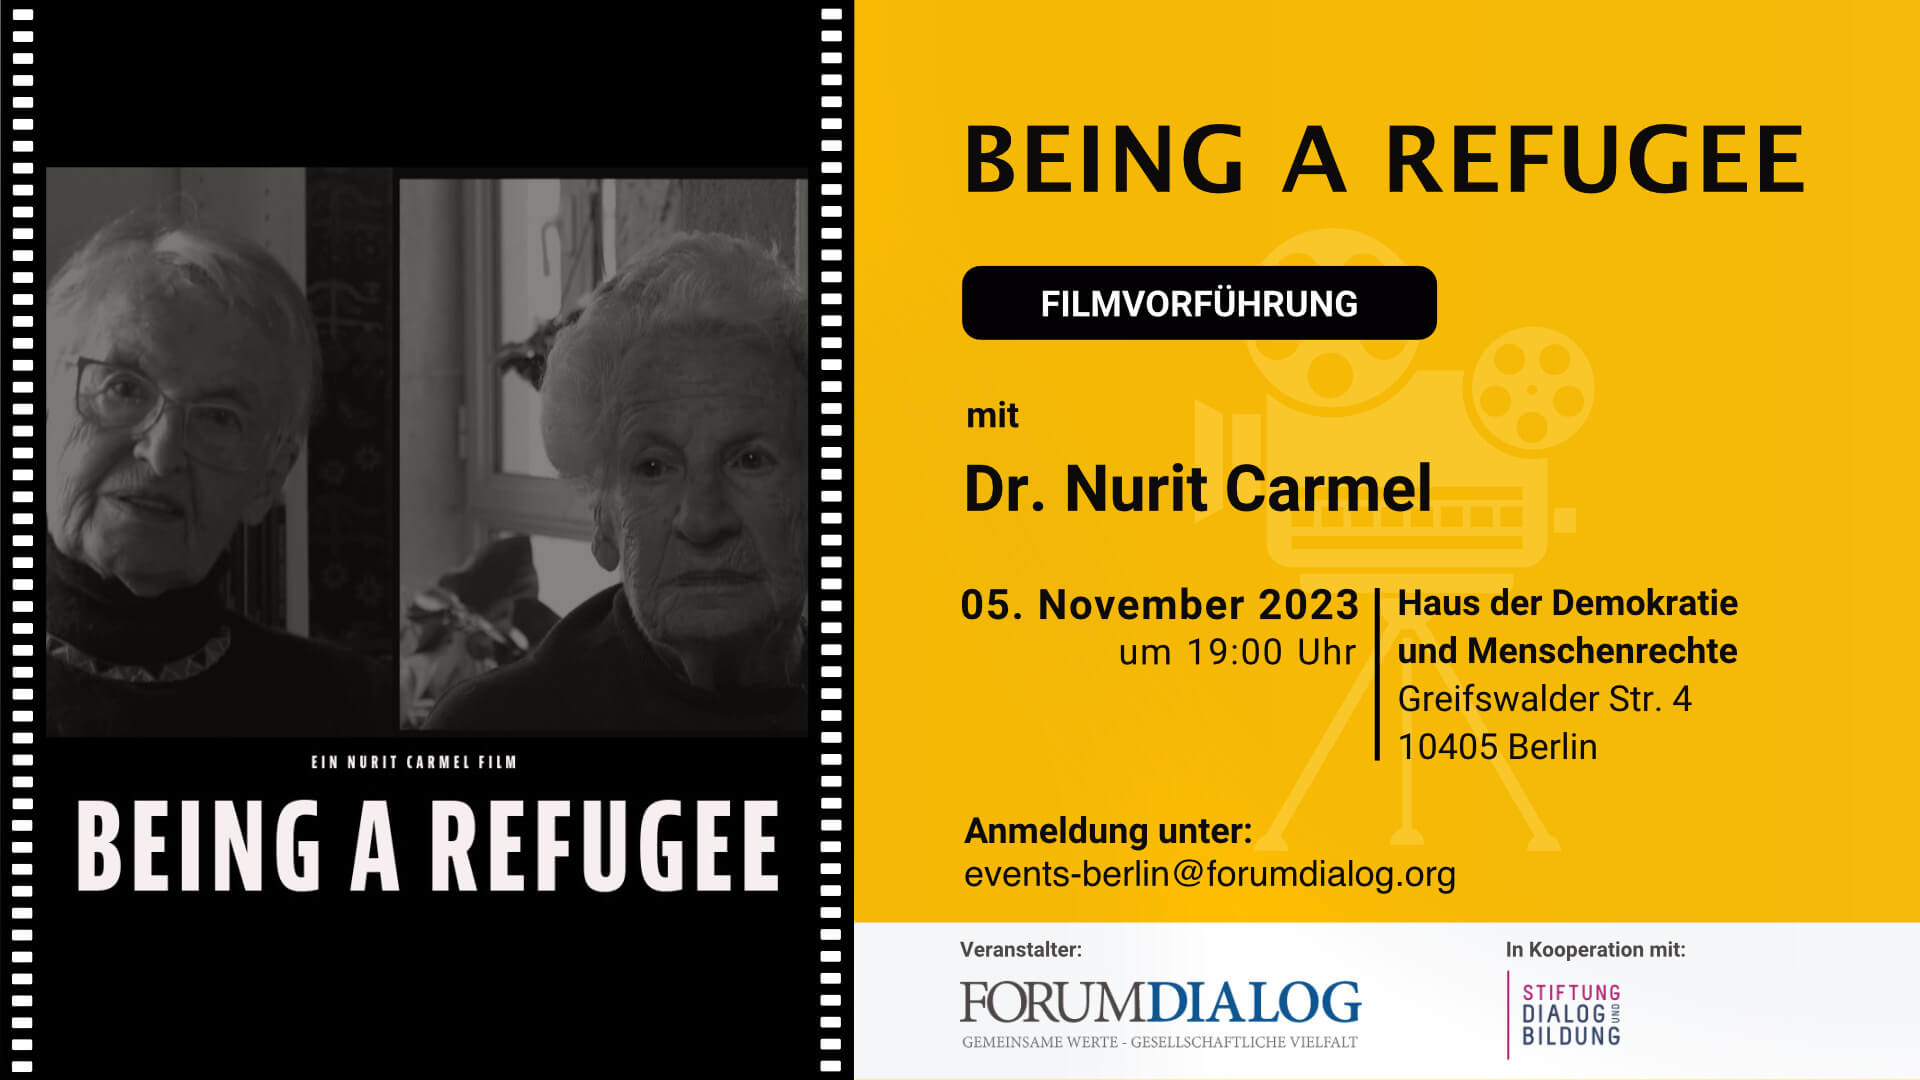 Being a Refugee – Filmvorführung mit Dr. Nurit Carmel (ABGESAGT)